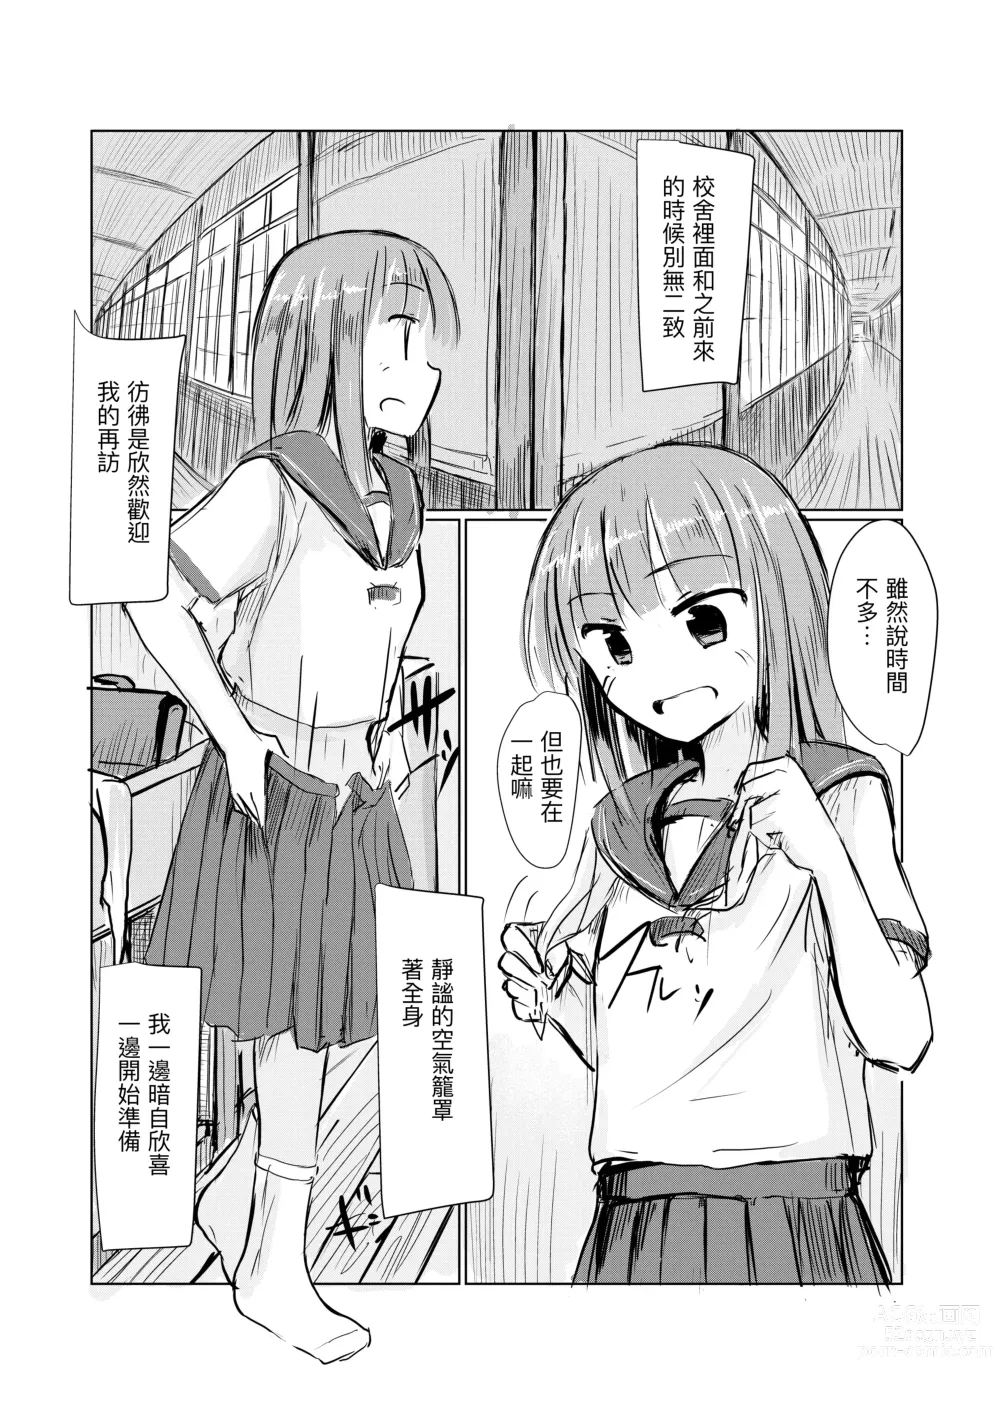 Page 5 of doujinshi Shoujo to Haikousha II